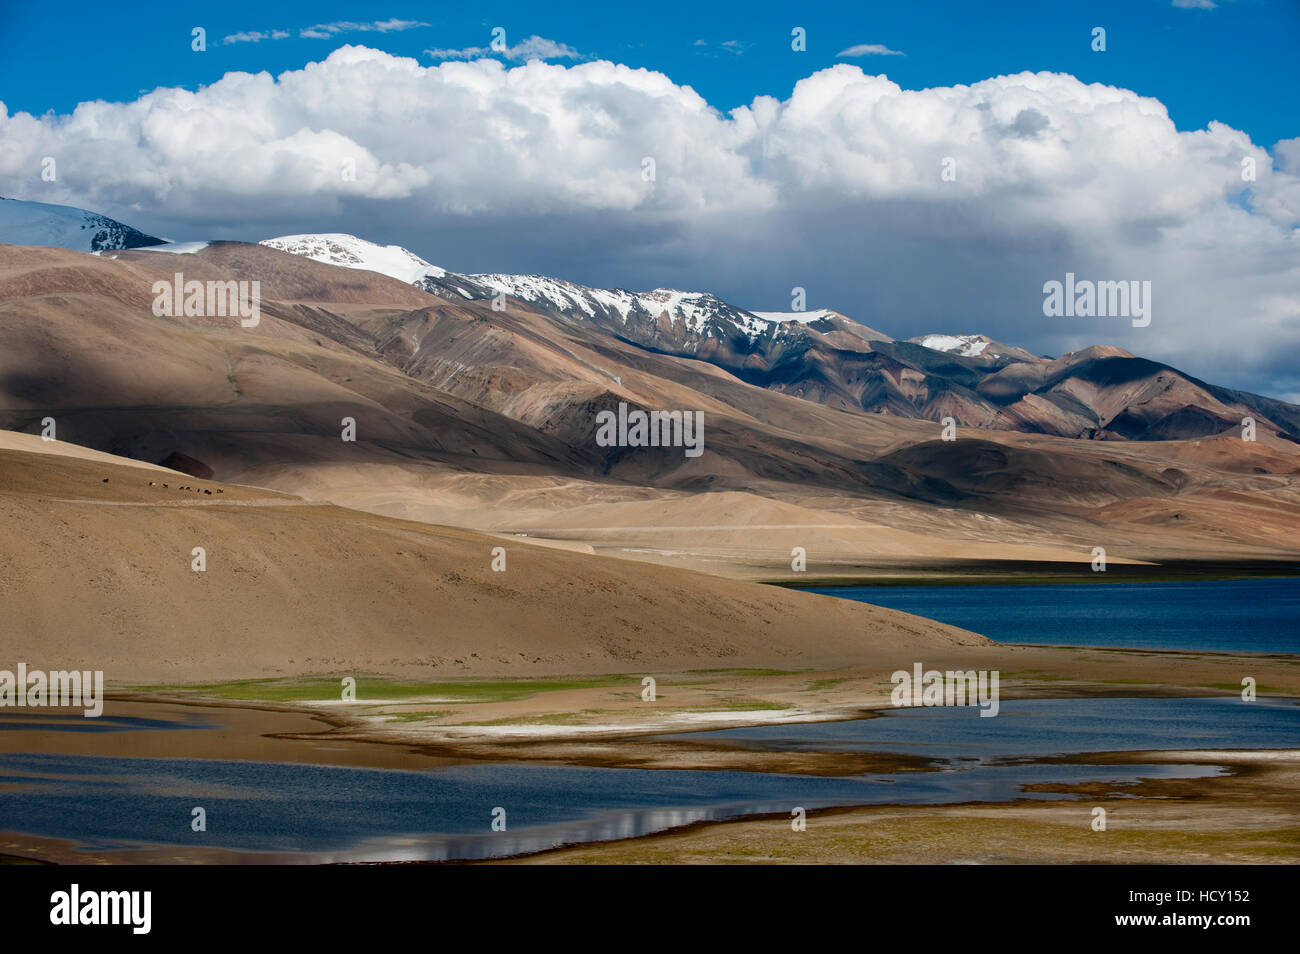 Le lac Tso Moriri à une altitude de 4595m, Ladakh, Inde du nord Banque D'Images